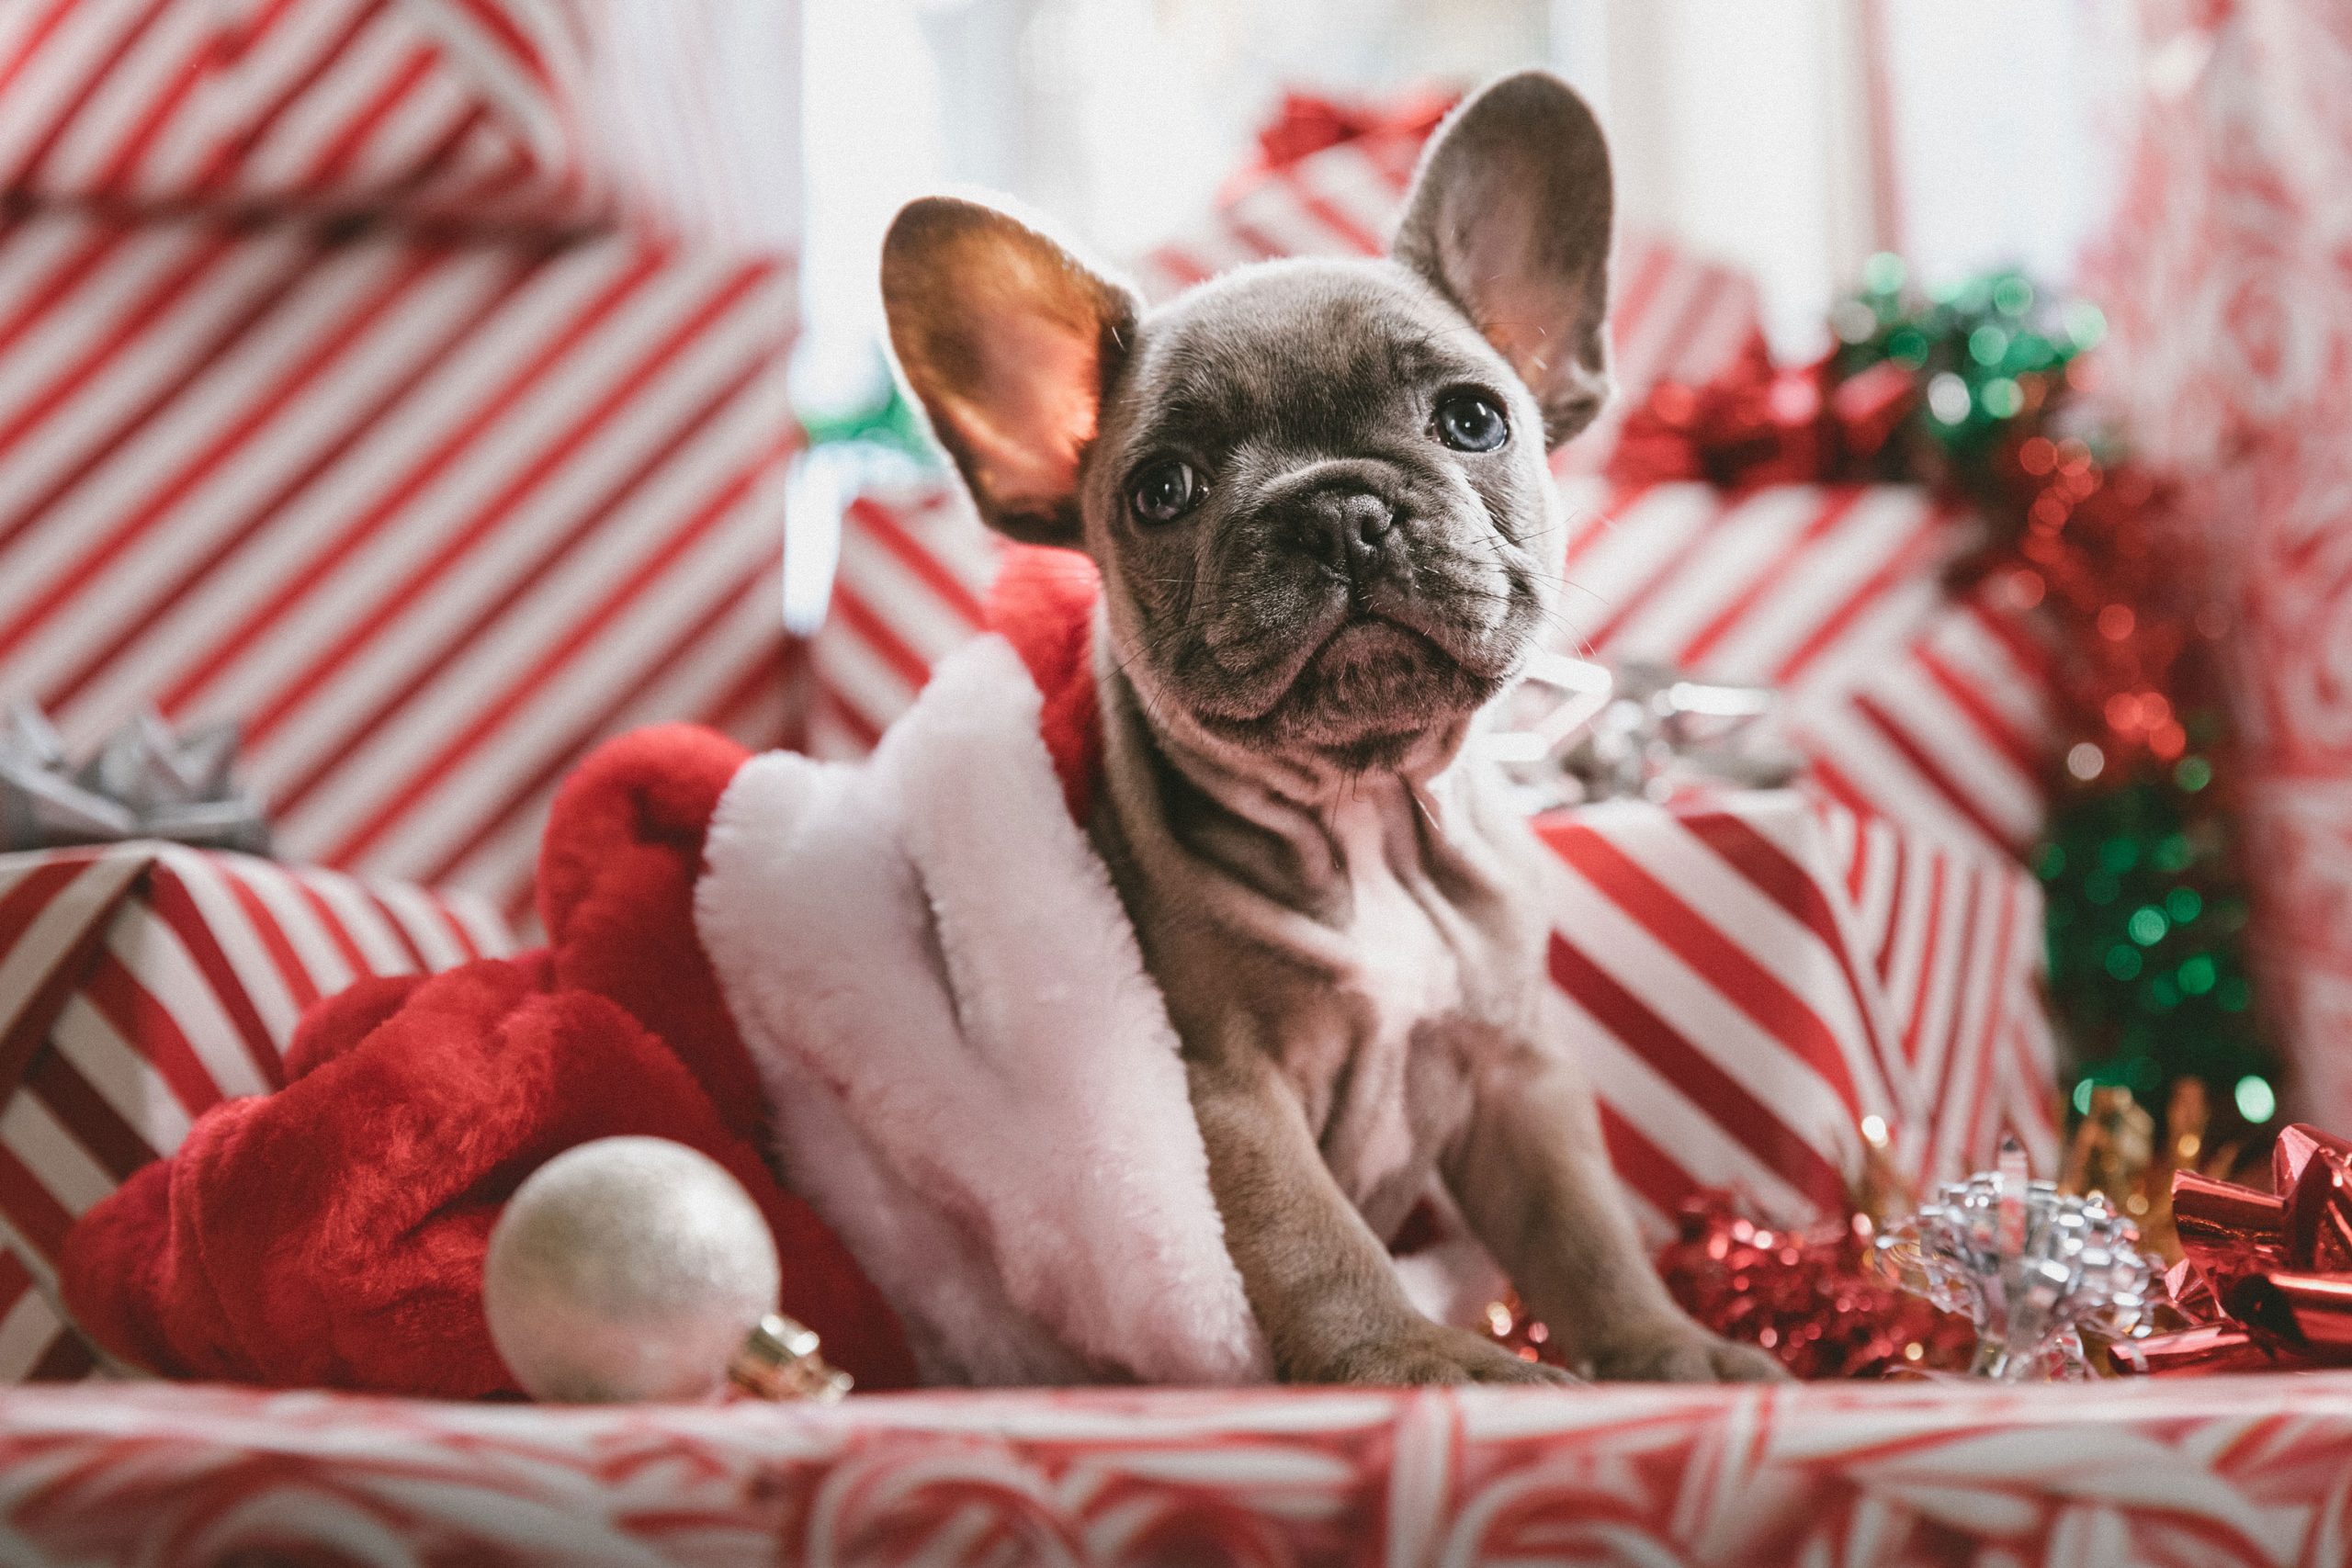 hund sitzt in weihnachtlicher kulisse mit geschenken